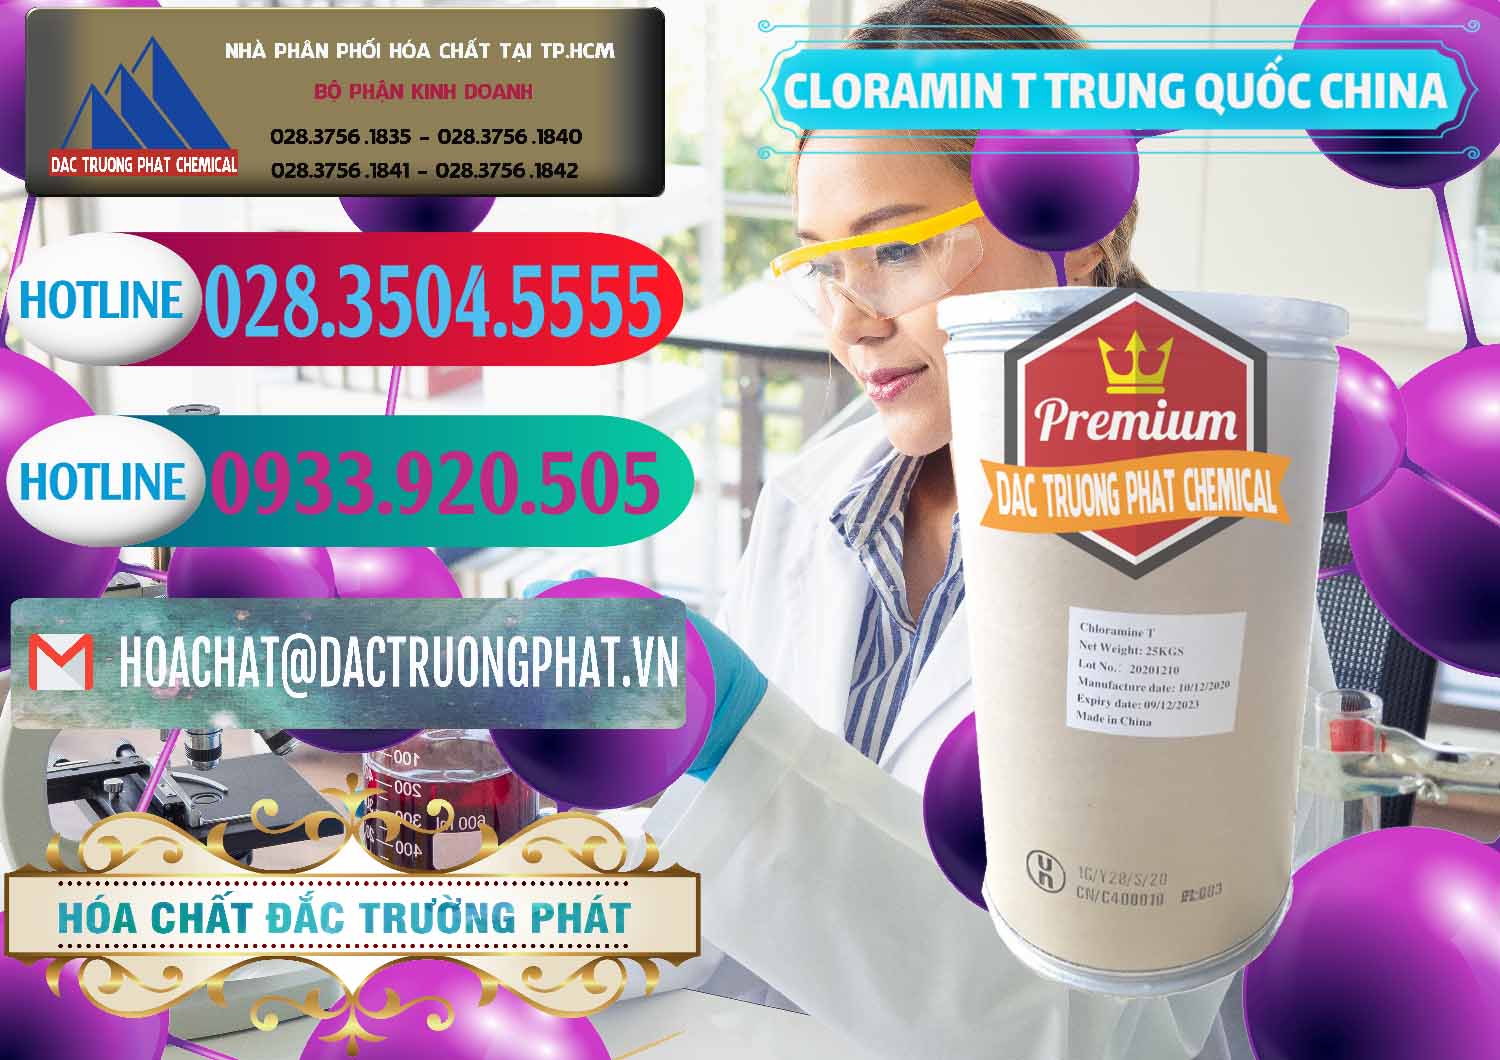 Chuyên cung cấp và bán Cloramin T Khử Trùng, Diệt Khuẩn Trung Quốc China - 0301 - Đơn vị phân phối ( cung cấp ) hóa chất tại TP.HCM - truongphat.vn